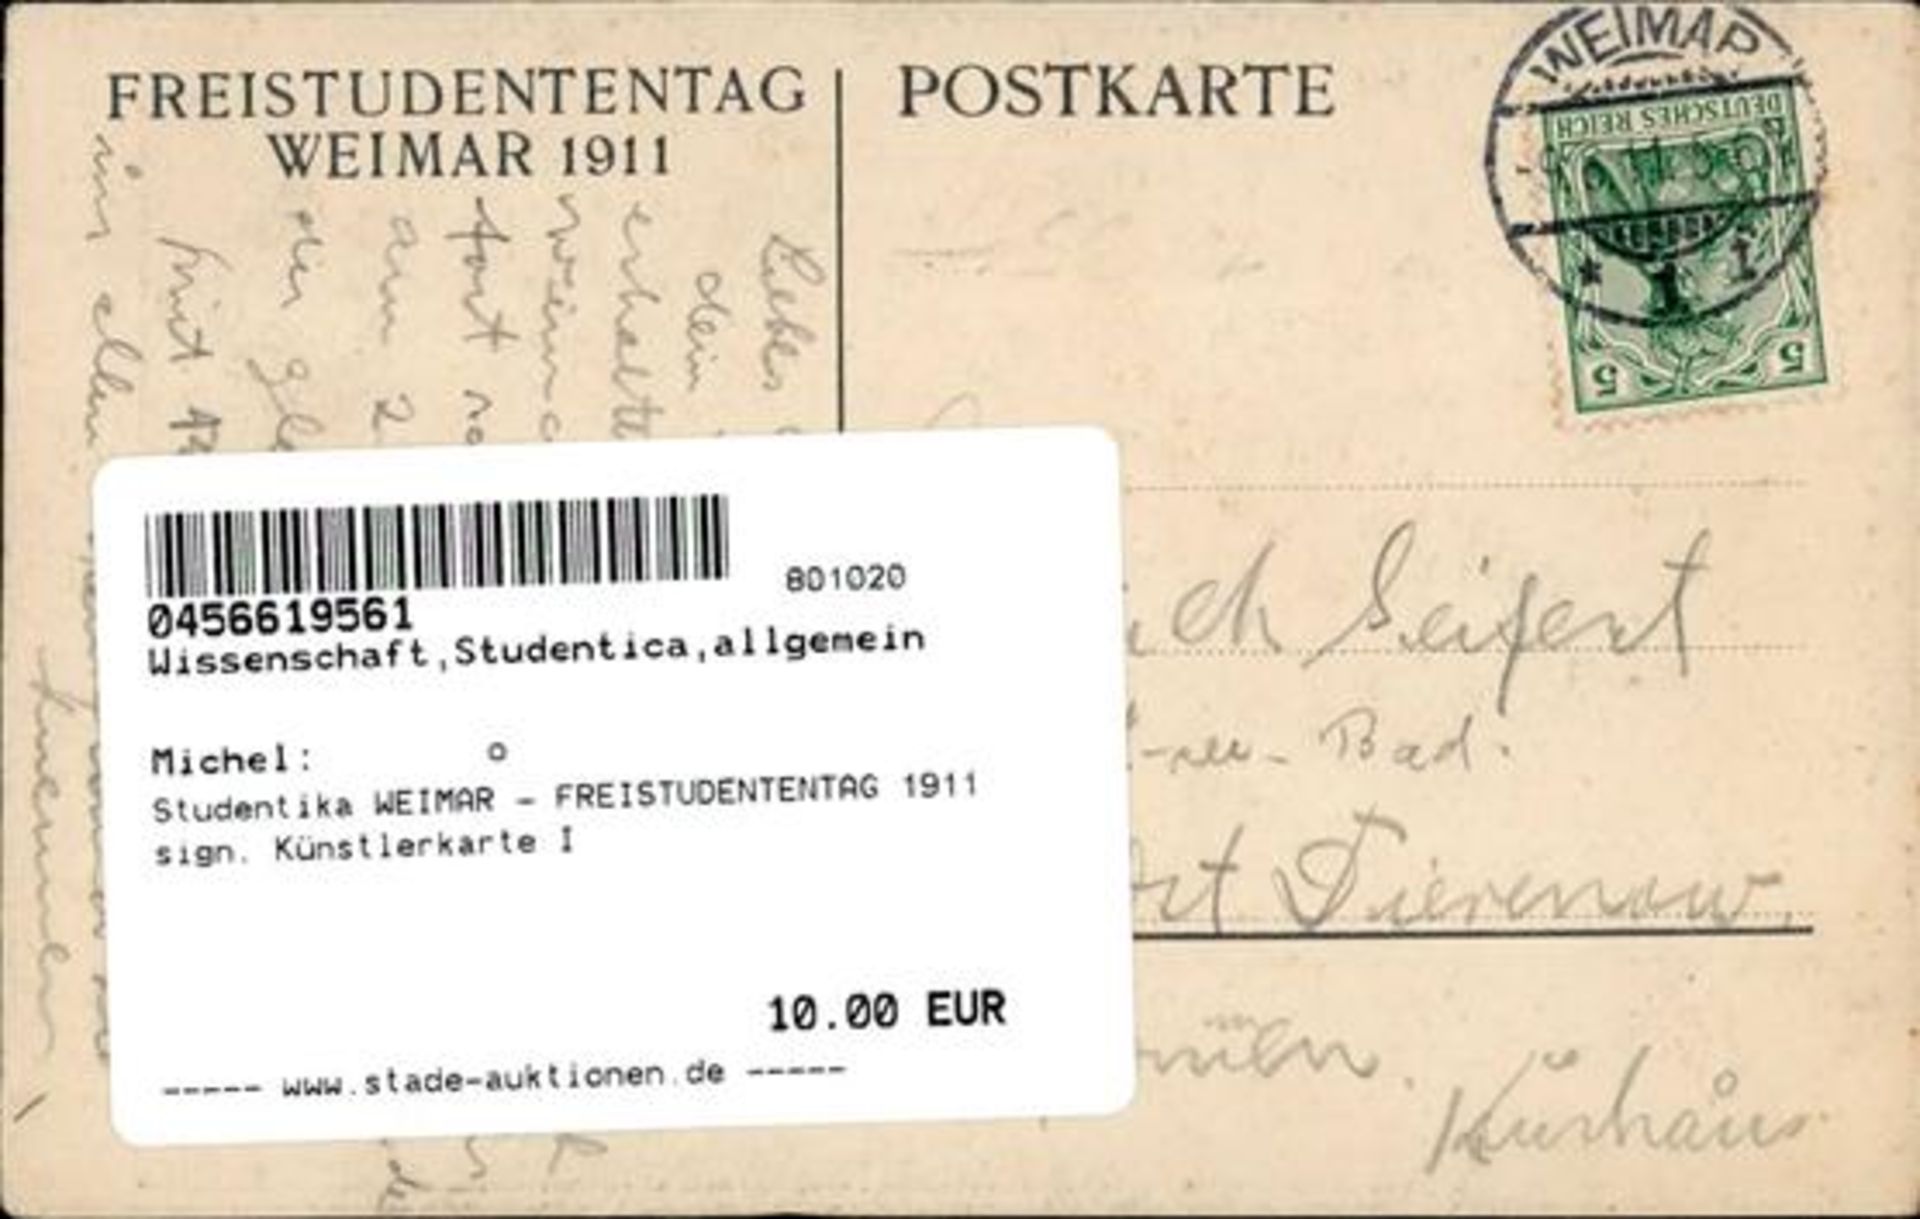 Studentika WEIMAR - FREISTUDENTENTAG 1911 sign. Künstlerkarte I - Bild 2 aus 2